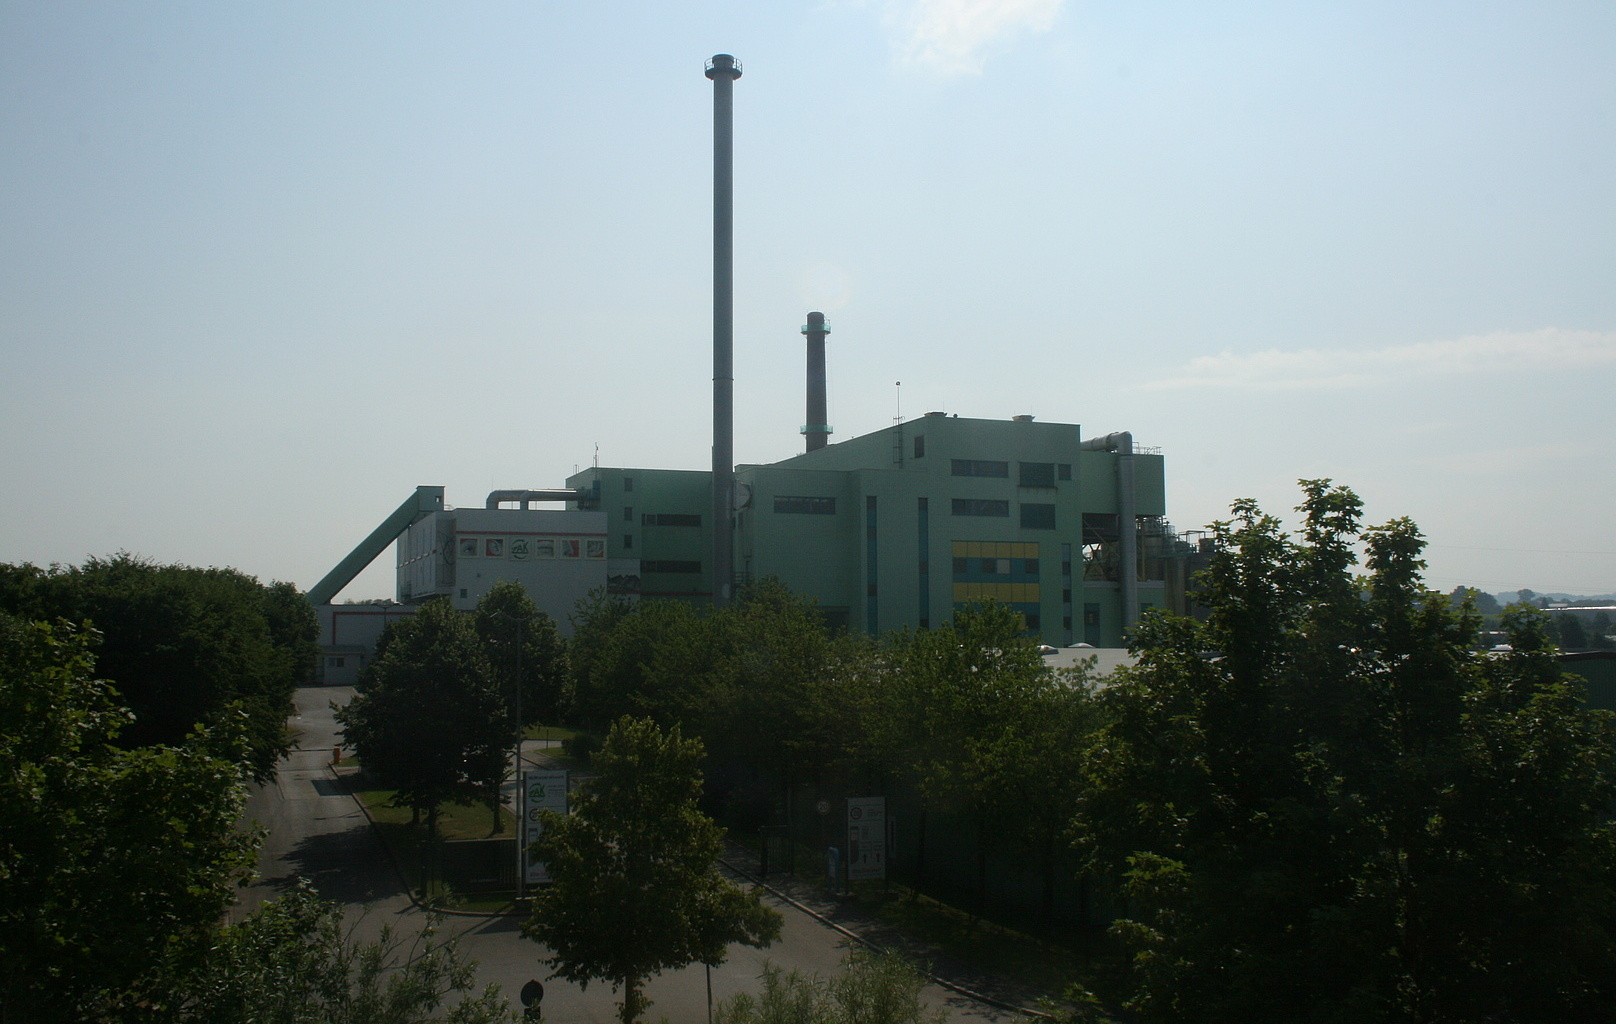 Gesamtaufnahme des Müllheizkraftwerkes in Kempten